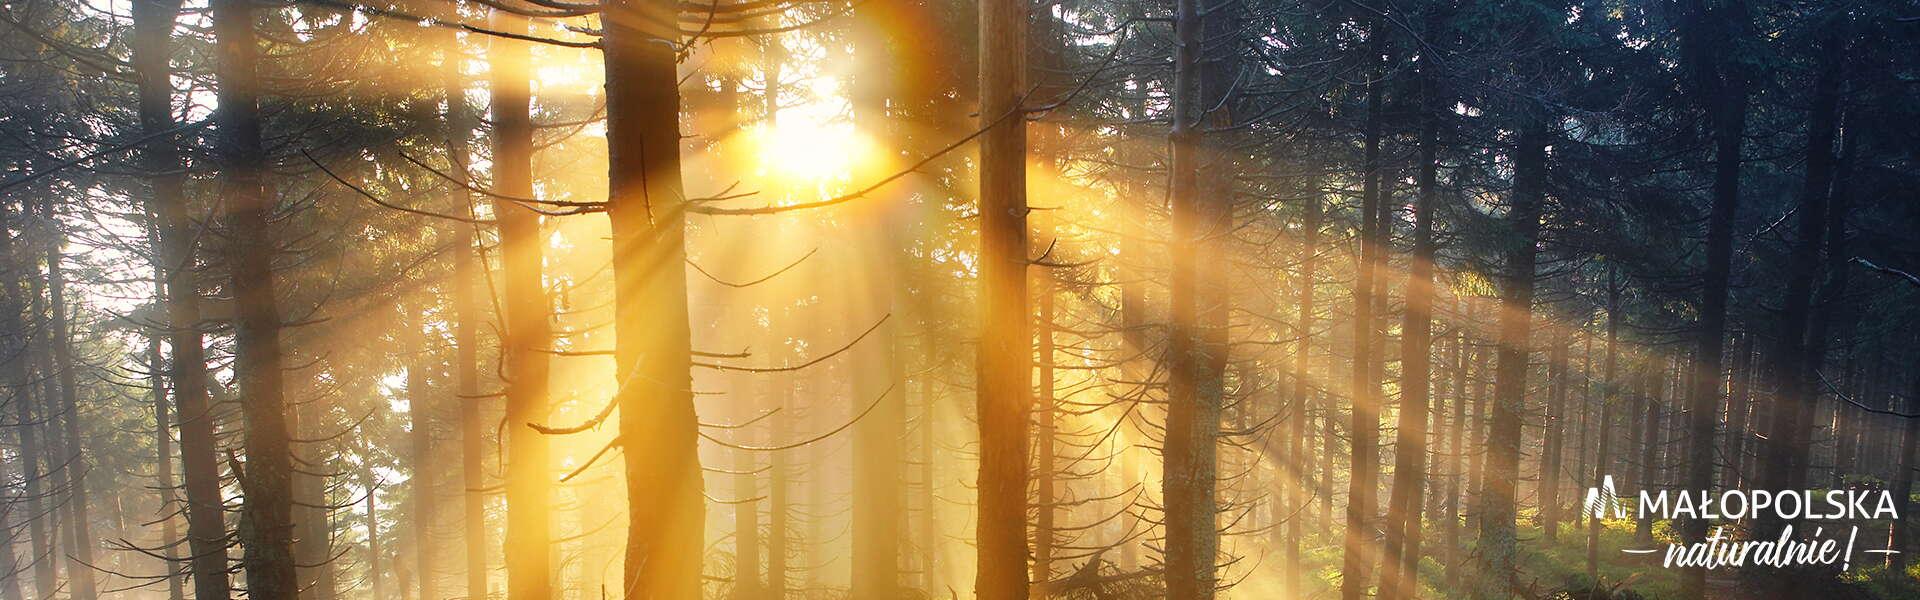 Promienie słoneczne przeświecające przez drzewa w lesie, w prawym dolnym rogu log - napis Małopolska naturalnie